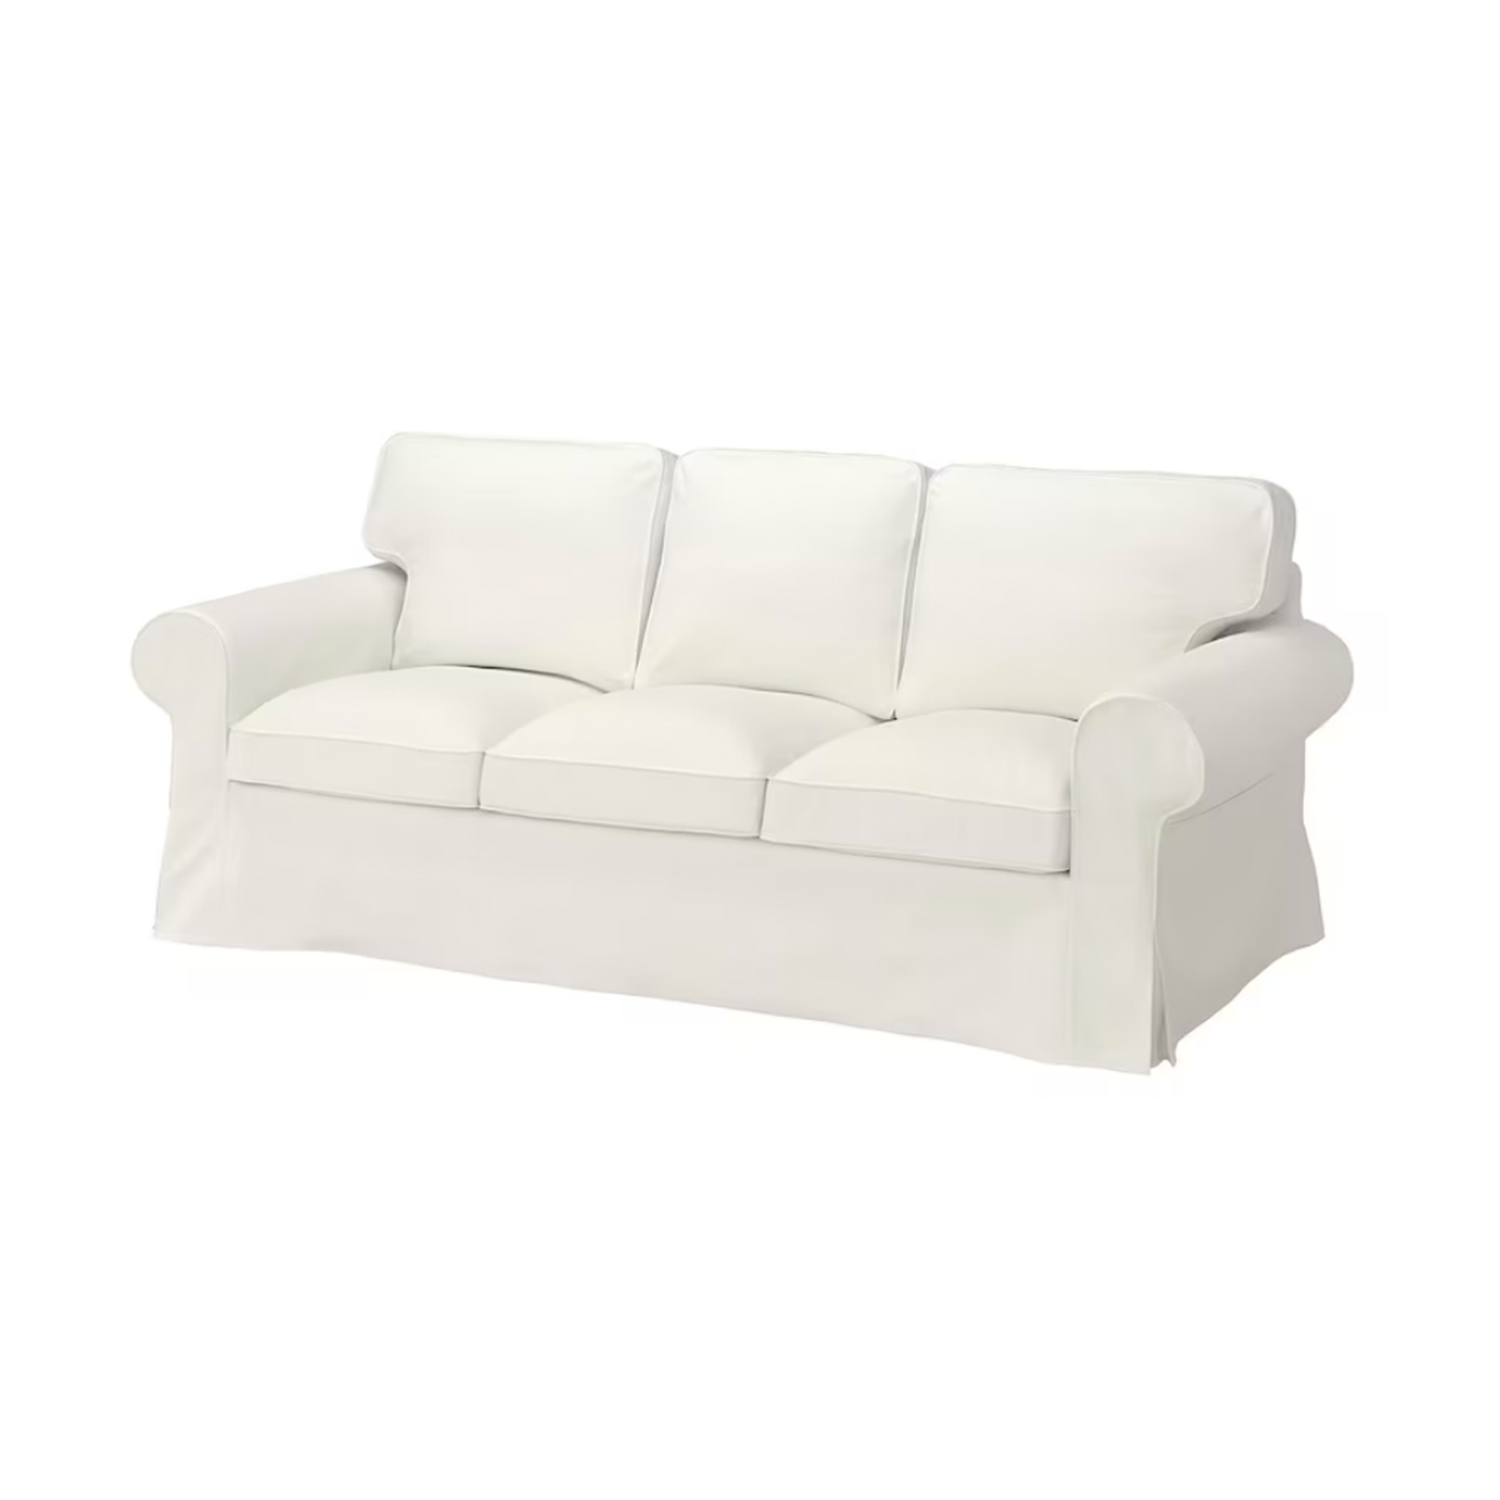 Ikea Uppland Sofa